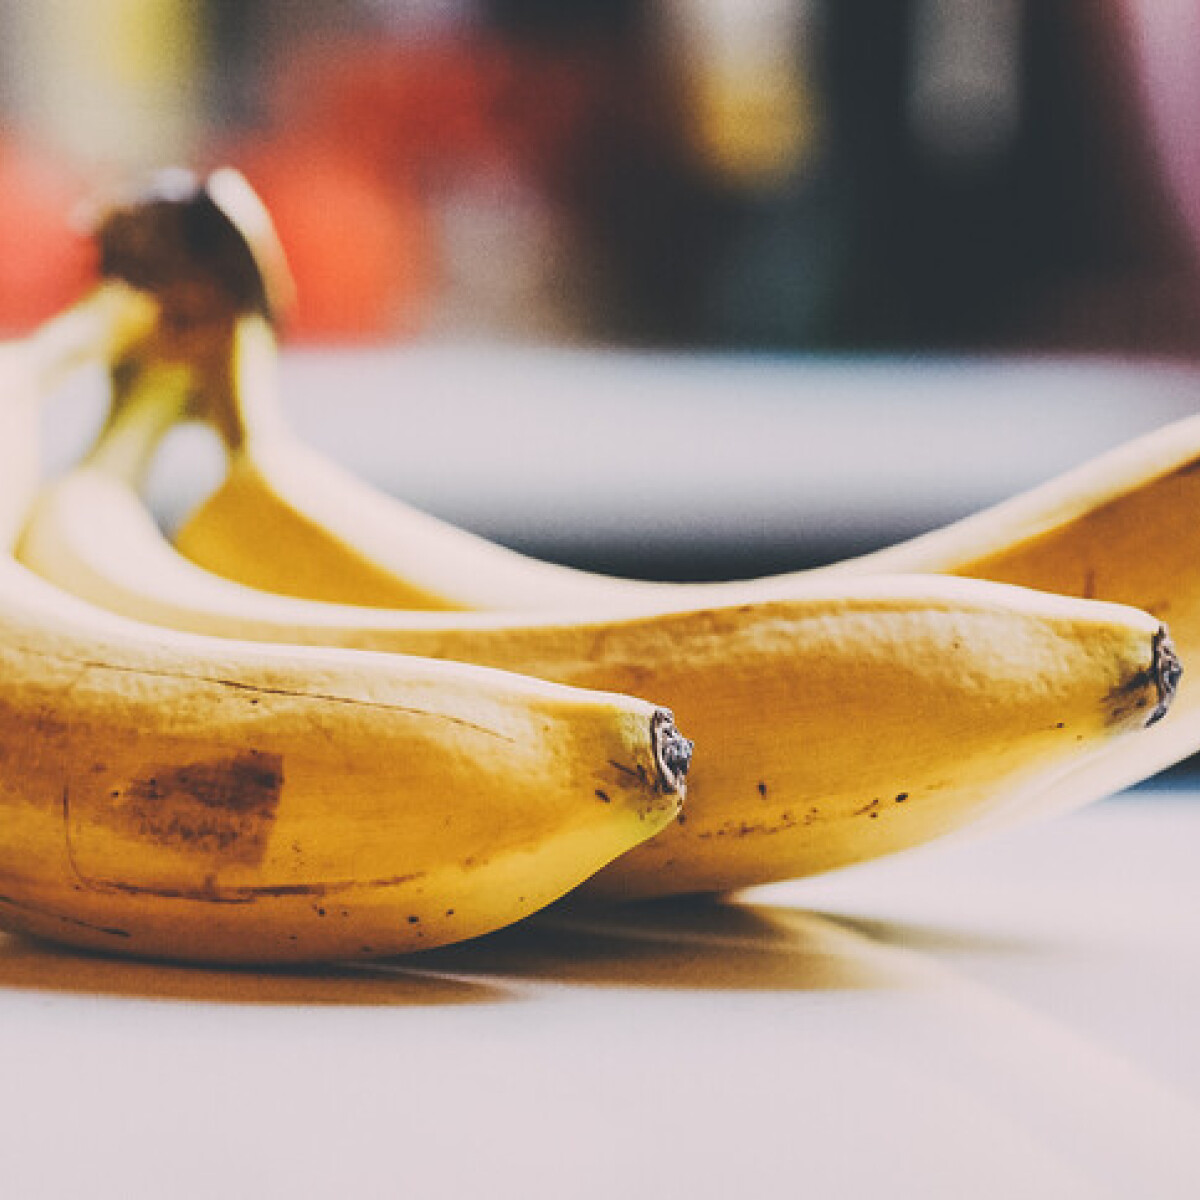 Így segíthet a banán abban, hogy egészségesebb legyél